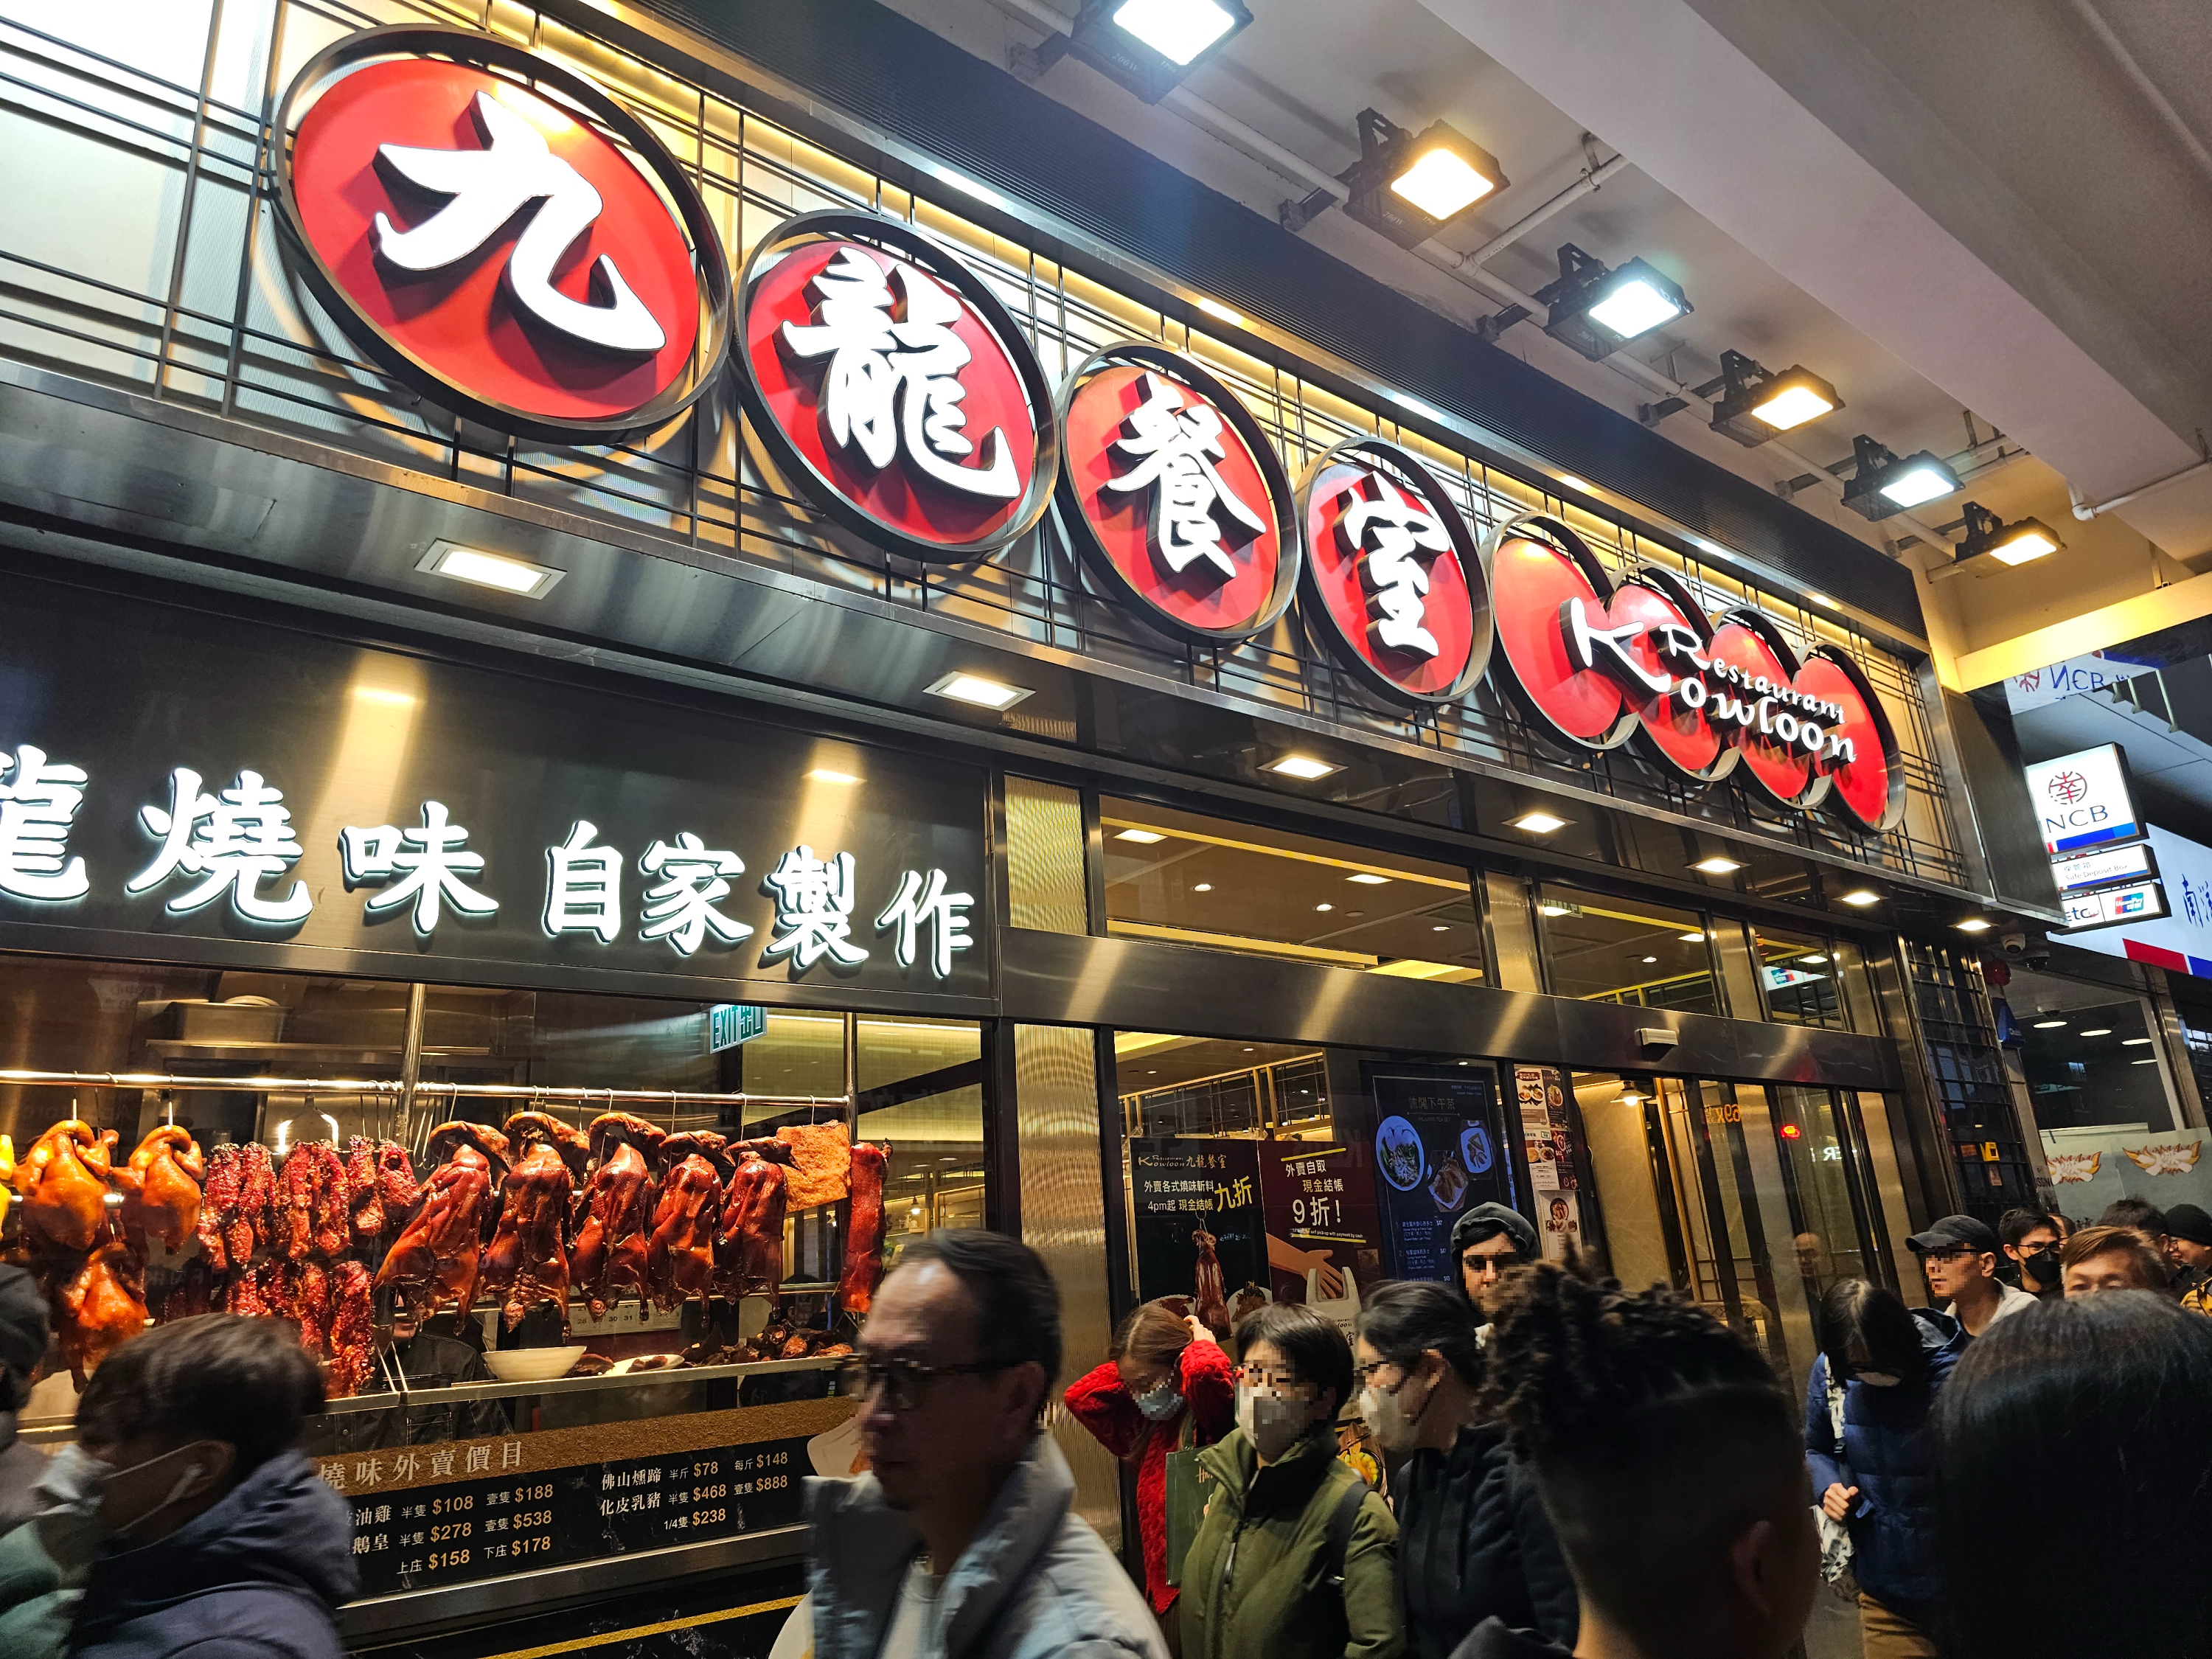 구룡 레스토랑 (Kowloon Restaurant)